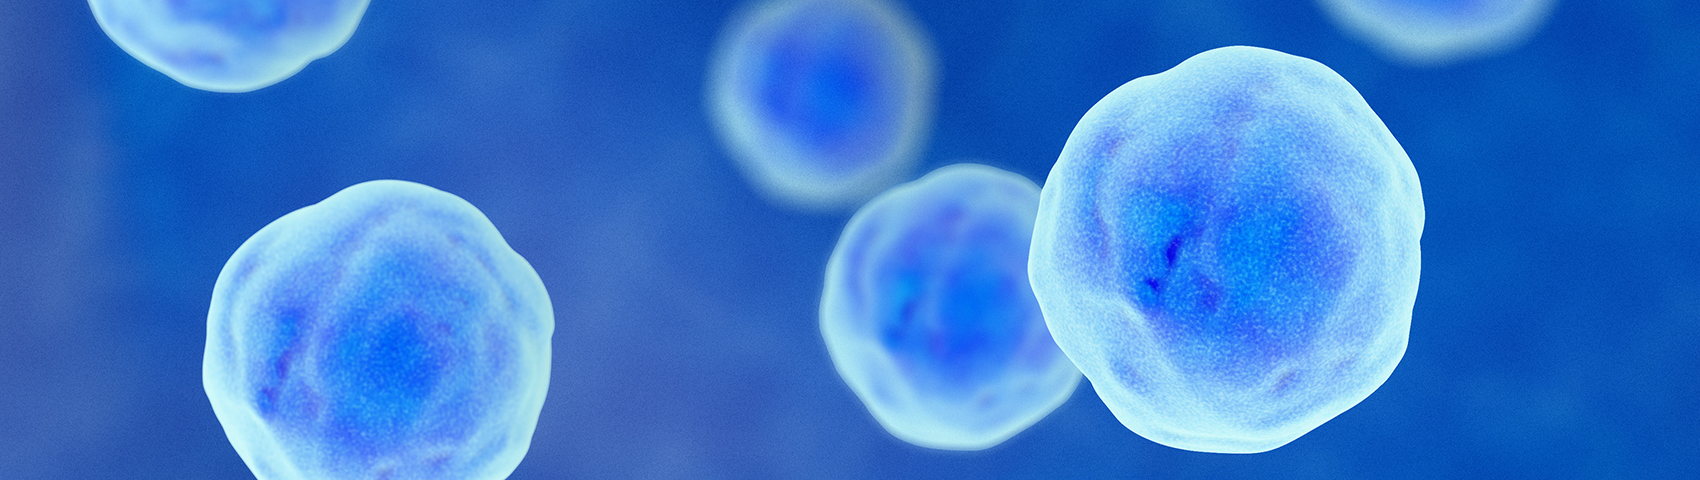 顕微鏡で見た細胞の画像。青く丸い形の細胞